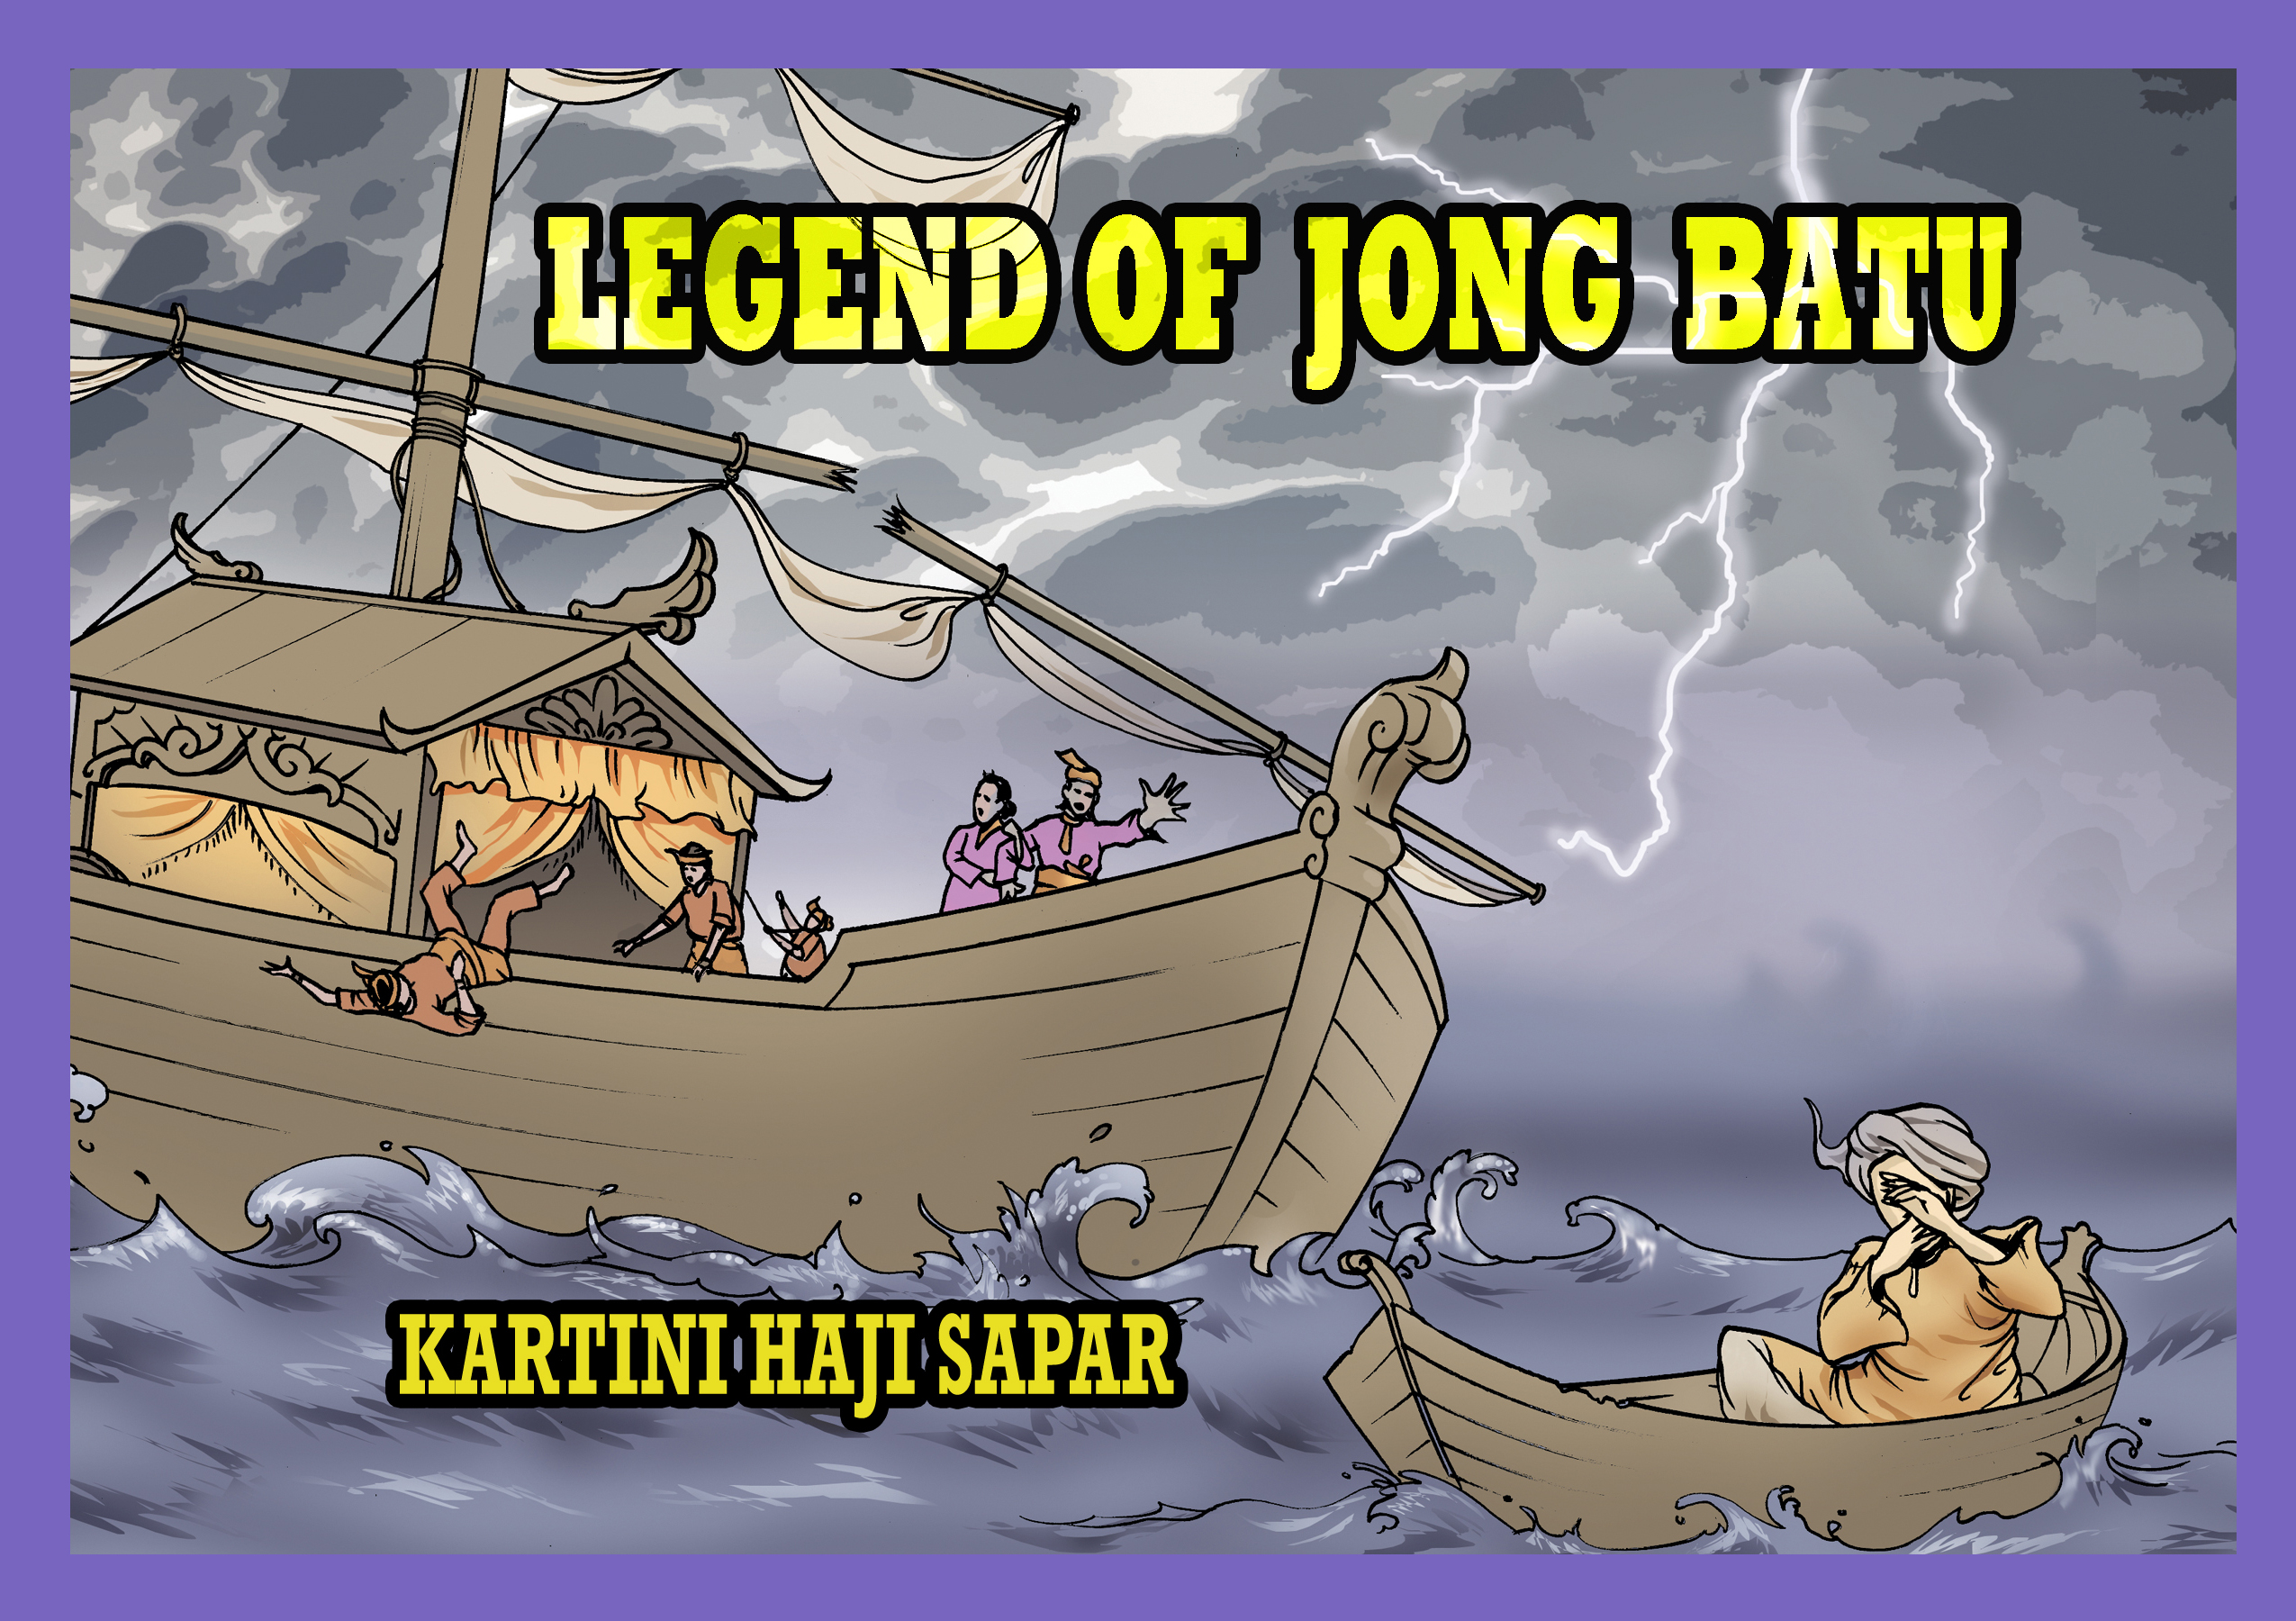 Legend of Jong Batu.jpg